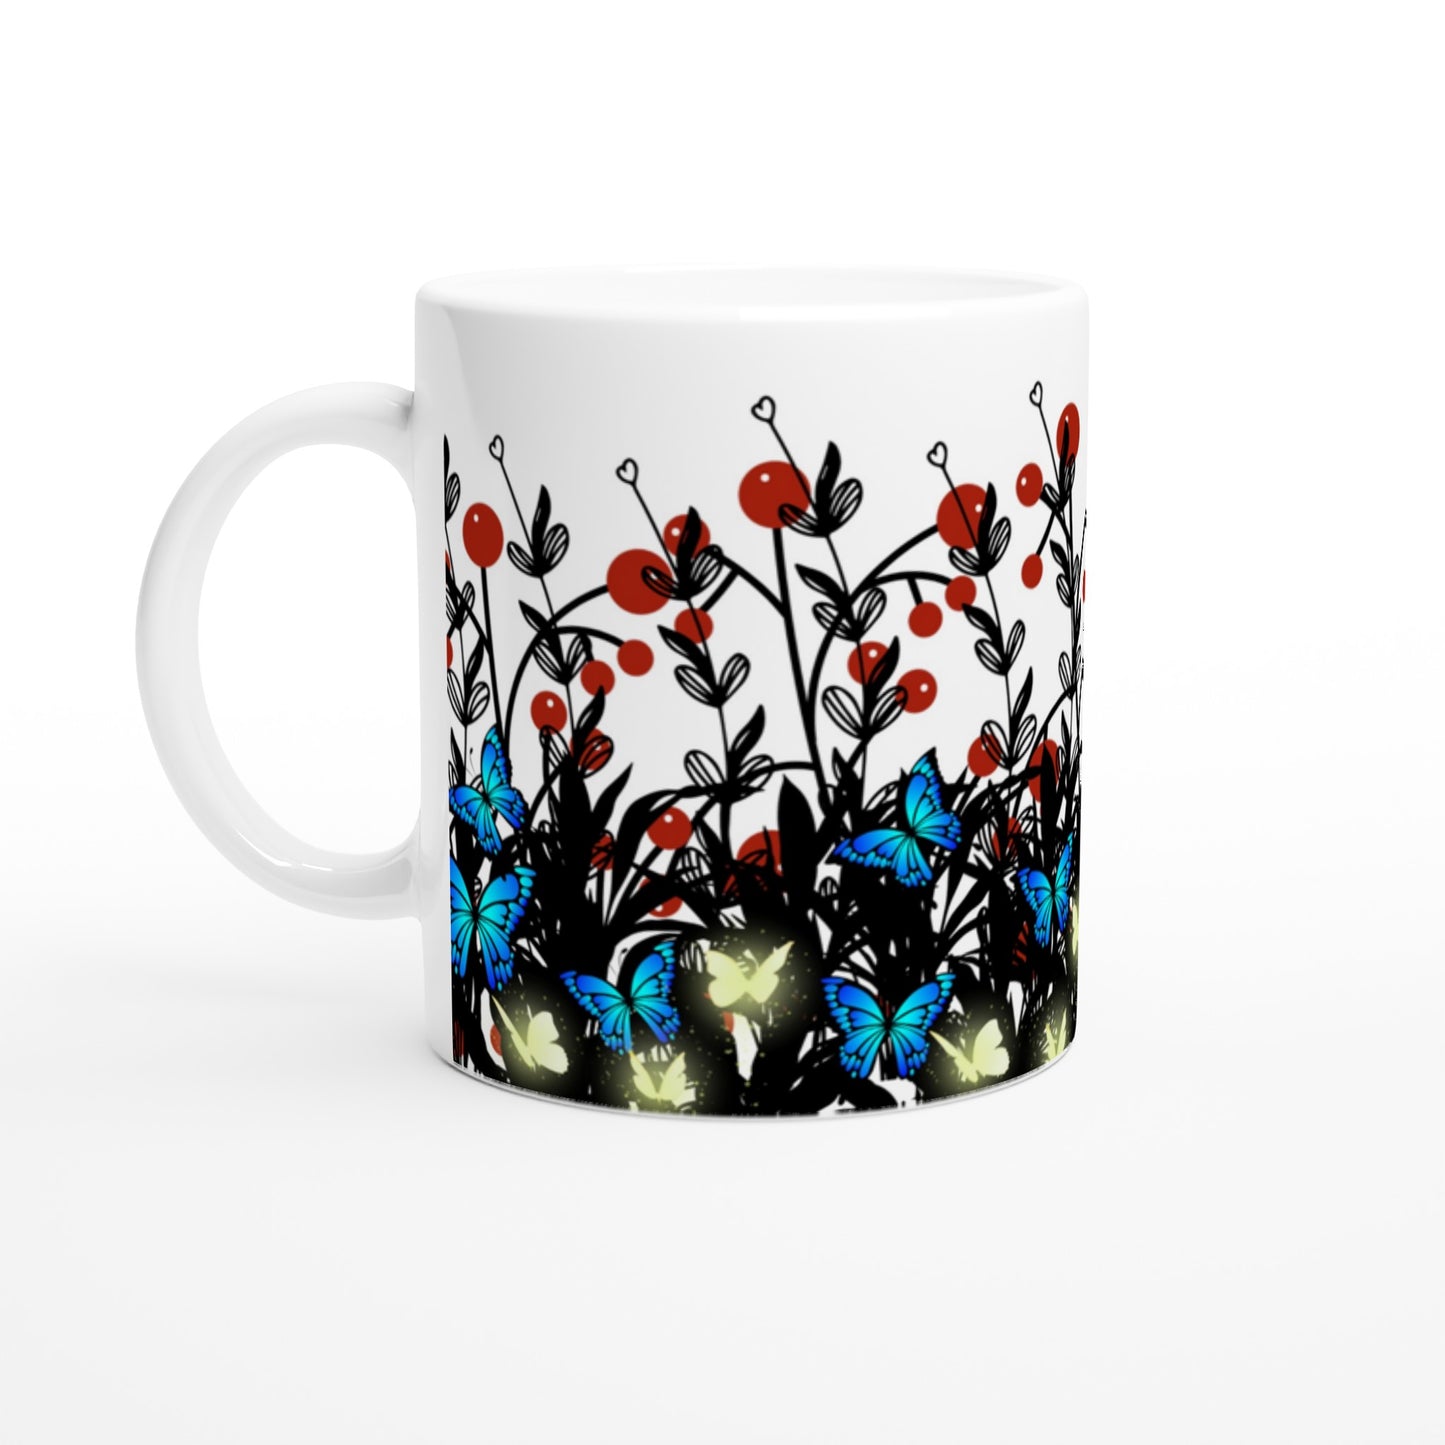 Taza para café con diseño floral y mariposas